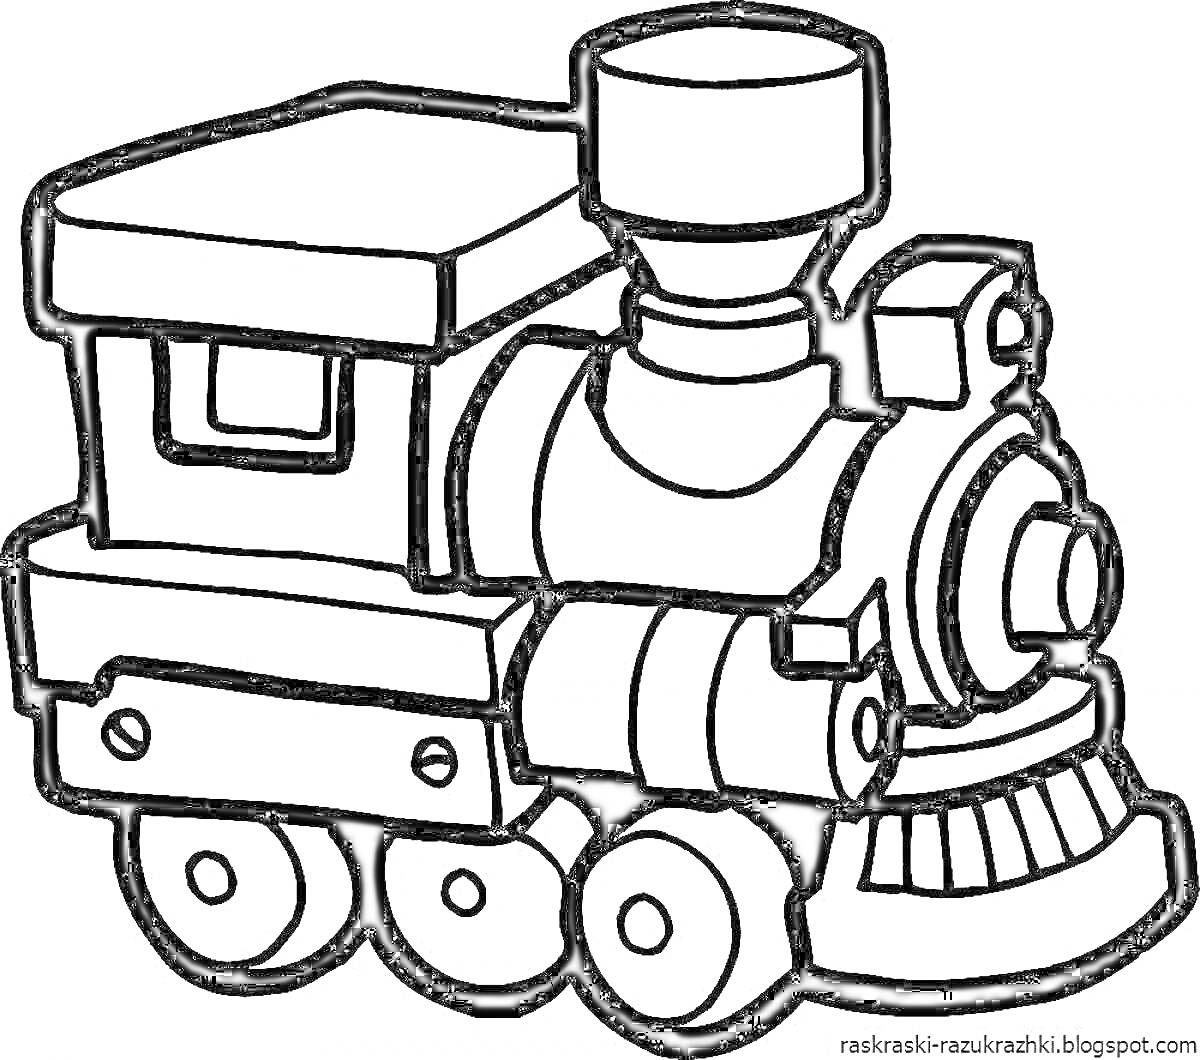 Раскраска Черно-белый рисунок паровоза с деталями кабин и колес